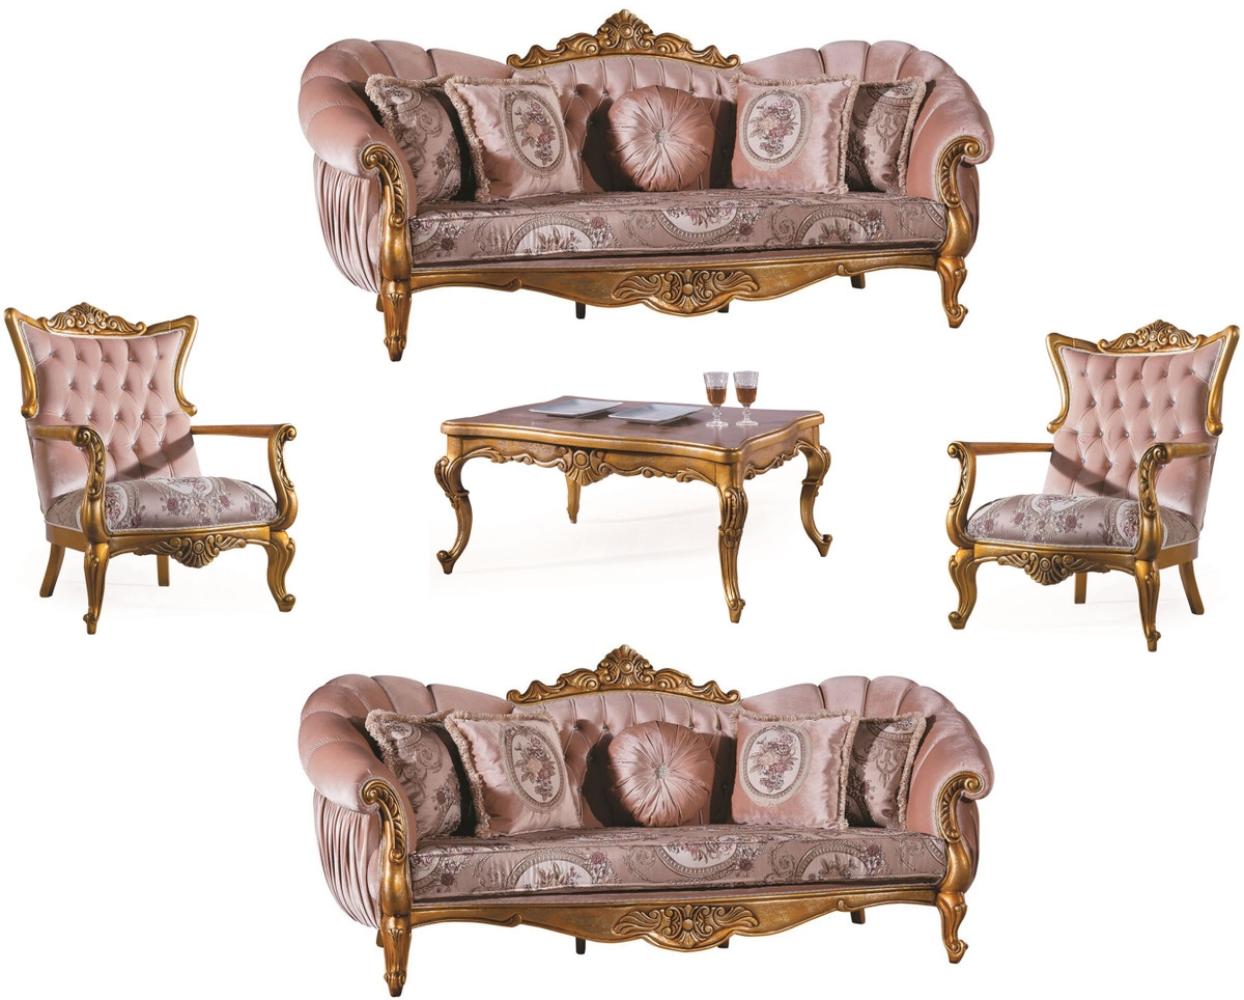 Casa Padrino Luxus Barock Wohnzimmer Set Rosa / Gold - 2 Sofas & 2 Sessel & 1 Couchtisch - Wohnzimmer Möbel - Edel & Prunkvoll Bild 1